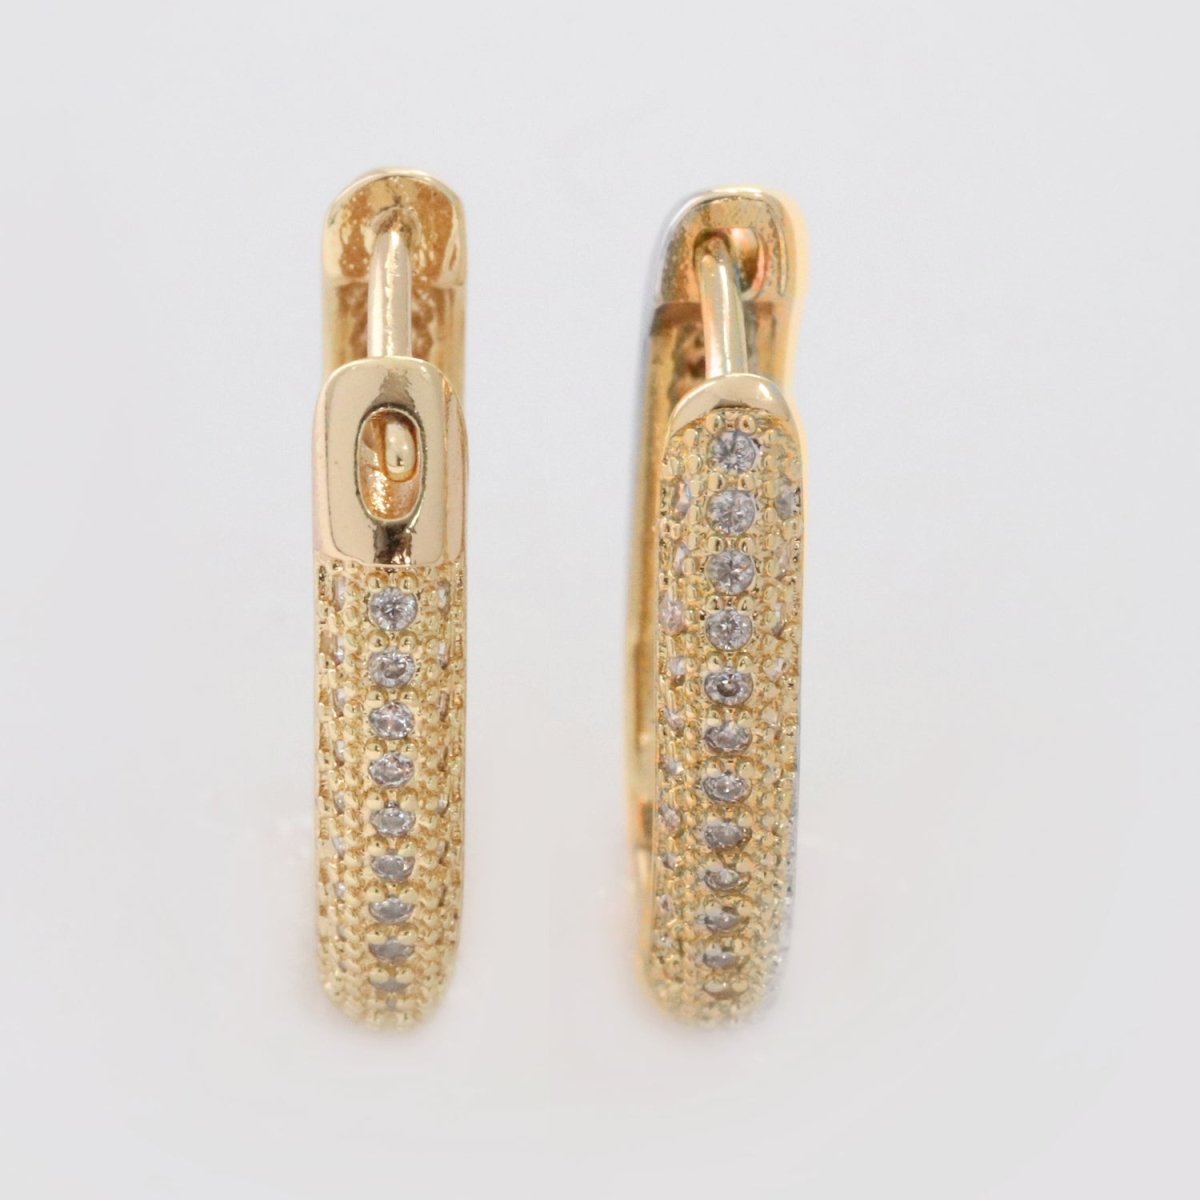 Small Oblong CZ Hoop Earrings Hypoallergenic 18K Gold Filled Huggie Hoop Earrings for Women | T-201 - DLUXCA